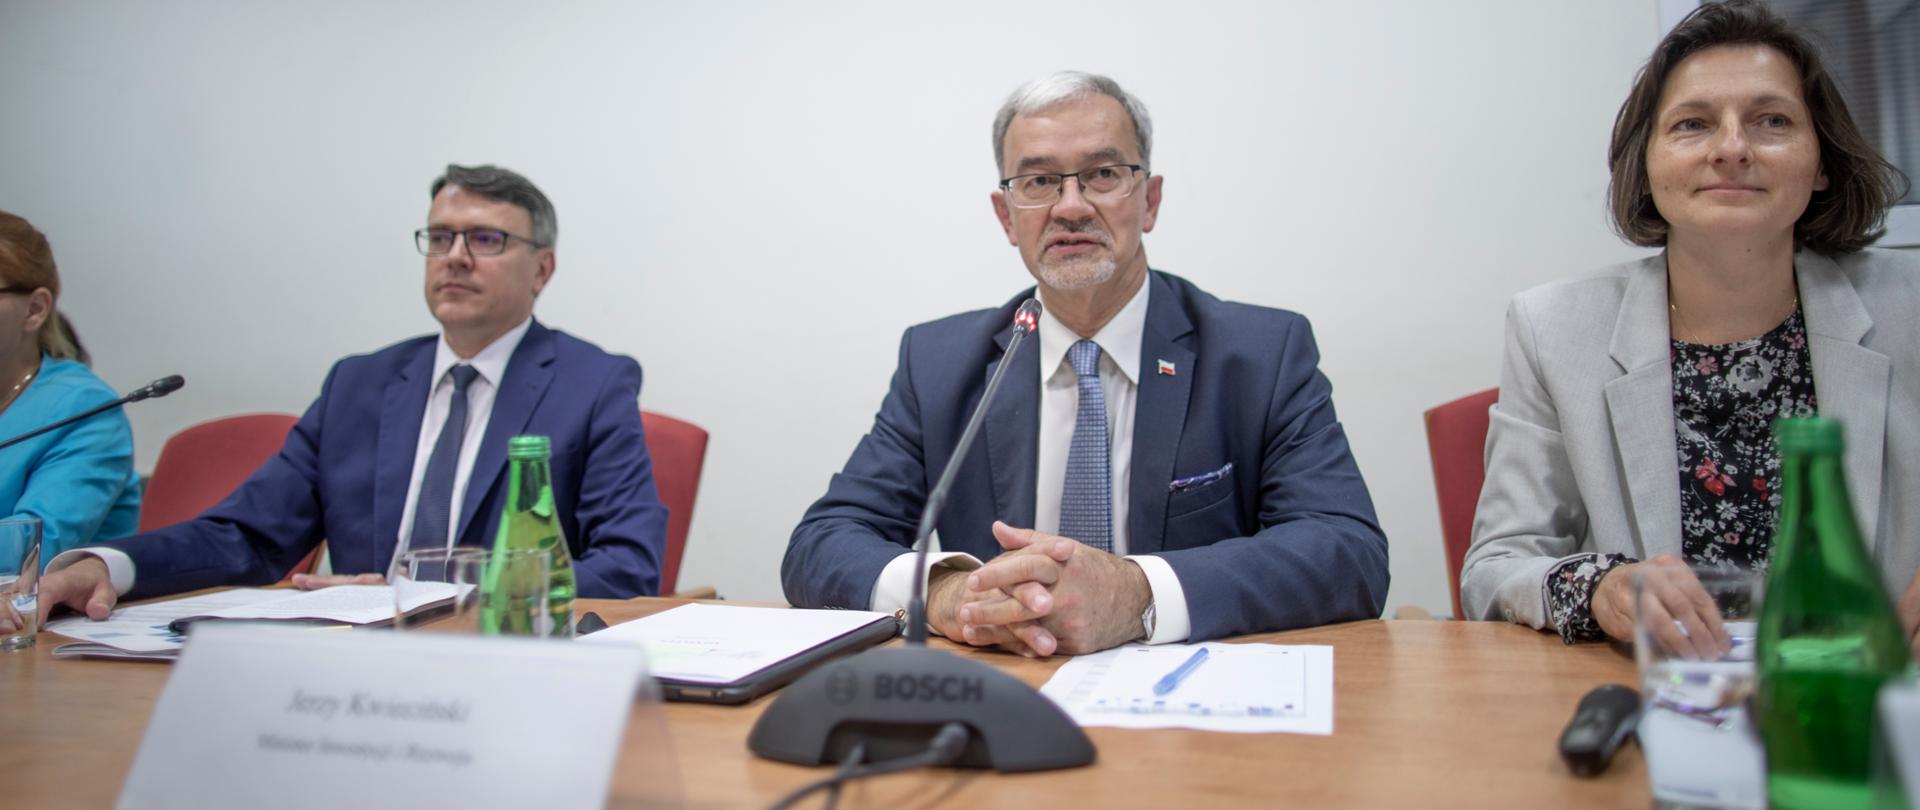 Minister Kwieciński siedzi przy stole przed nim stoi mikrofon, obok siedzą pozostali uczestnicy spotkania